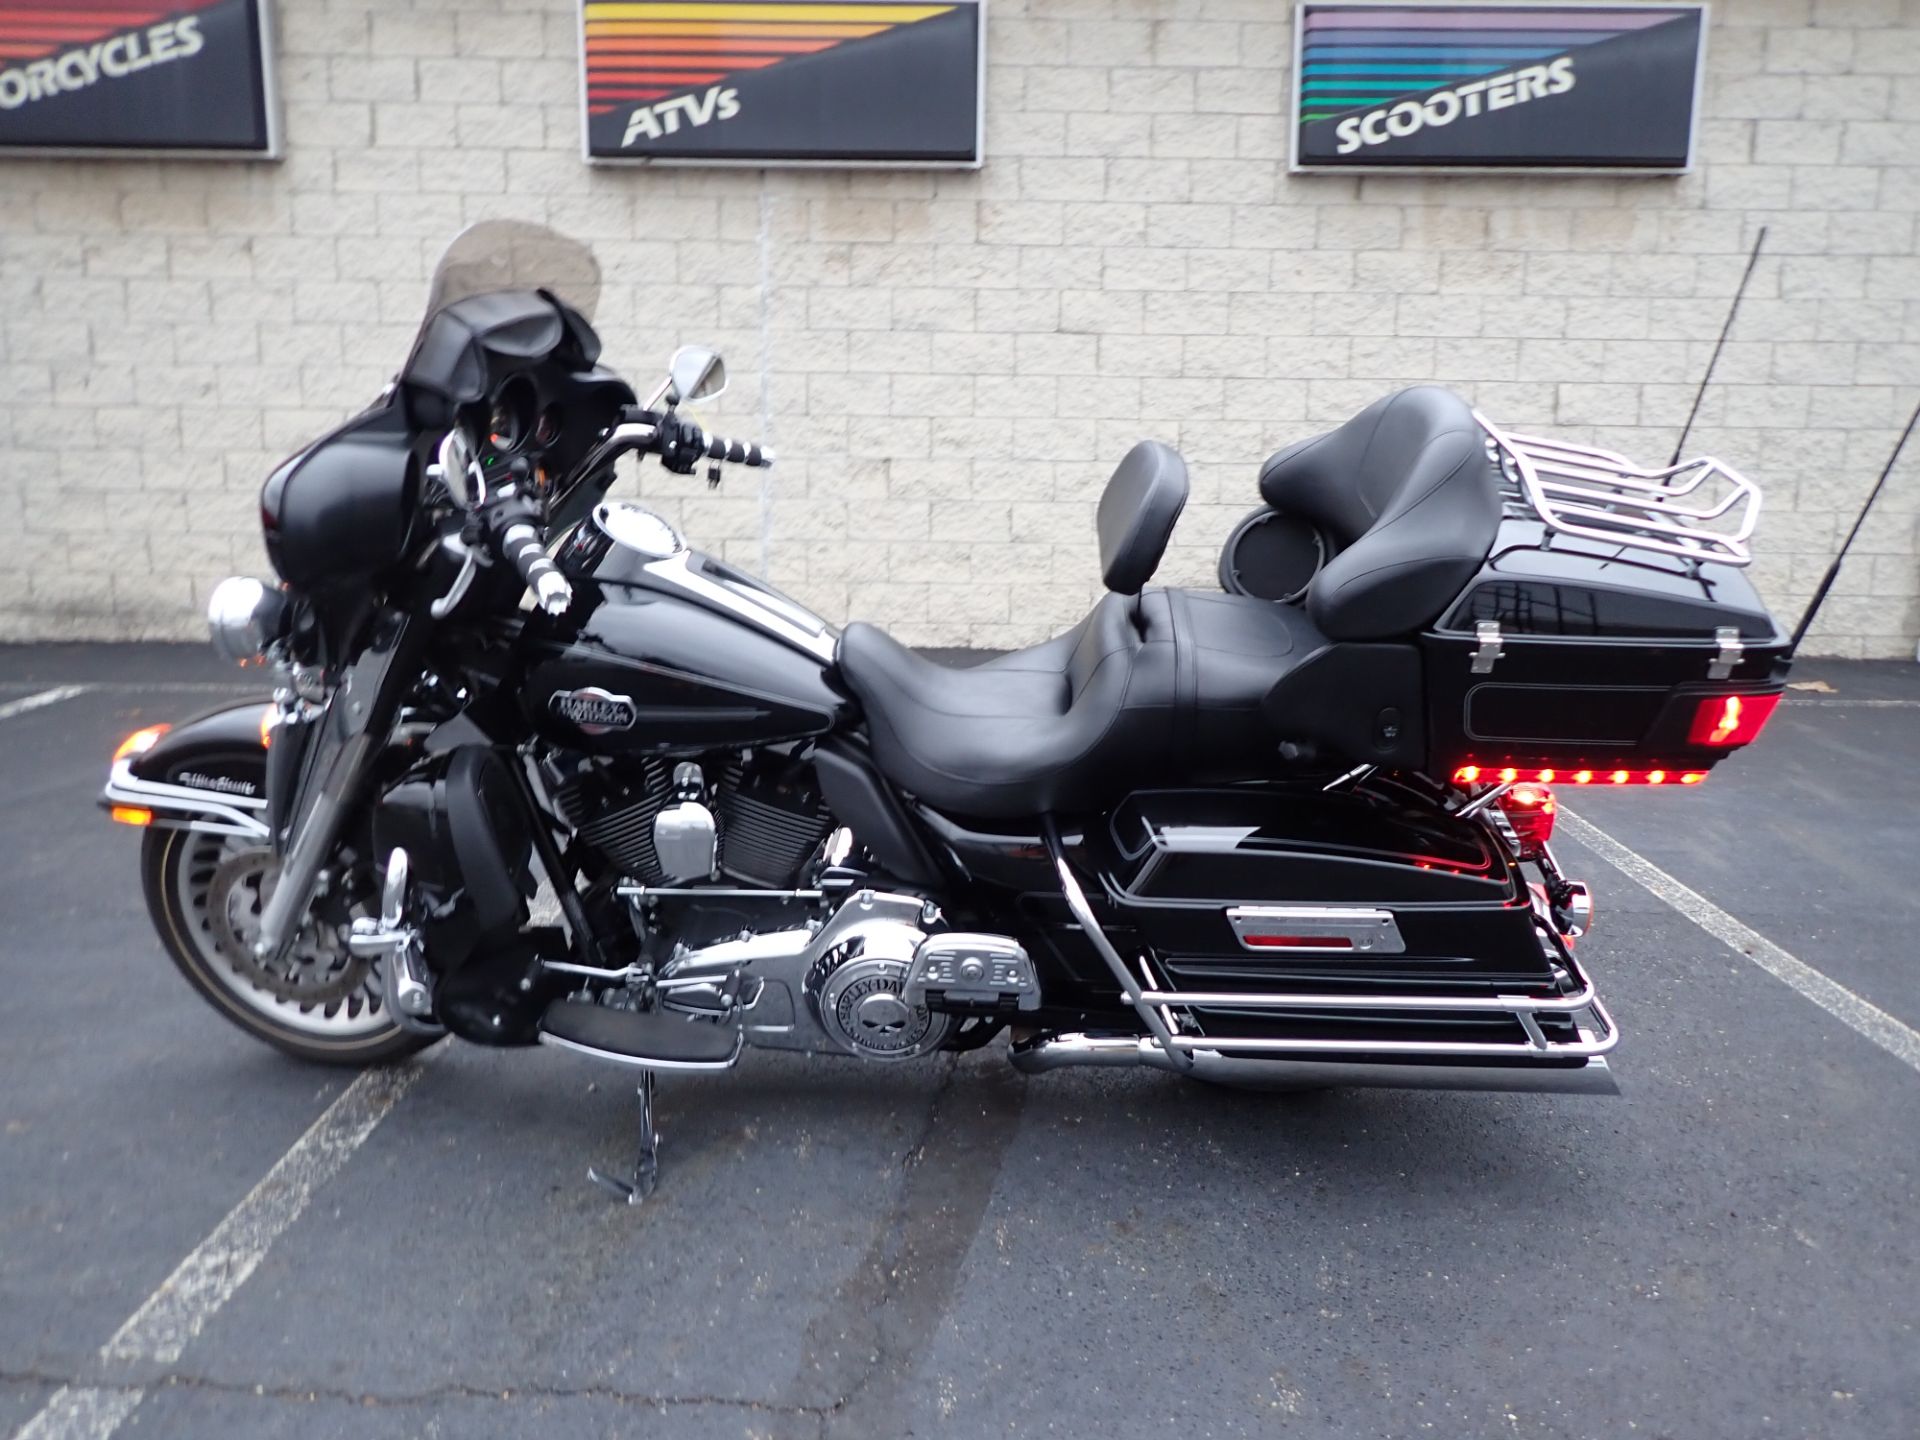 2013 Harley-Davidson Ultra Classic® Electra Glide® in Massillon, Ohio - Photo 6